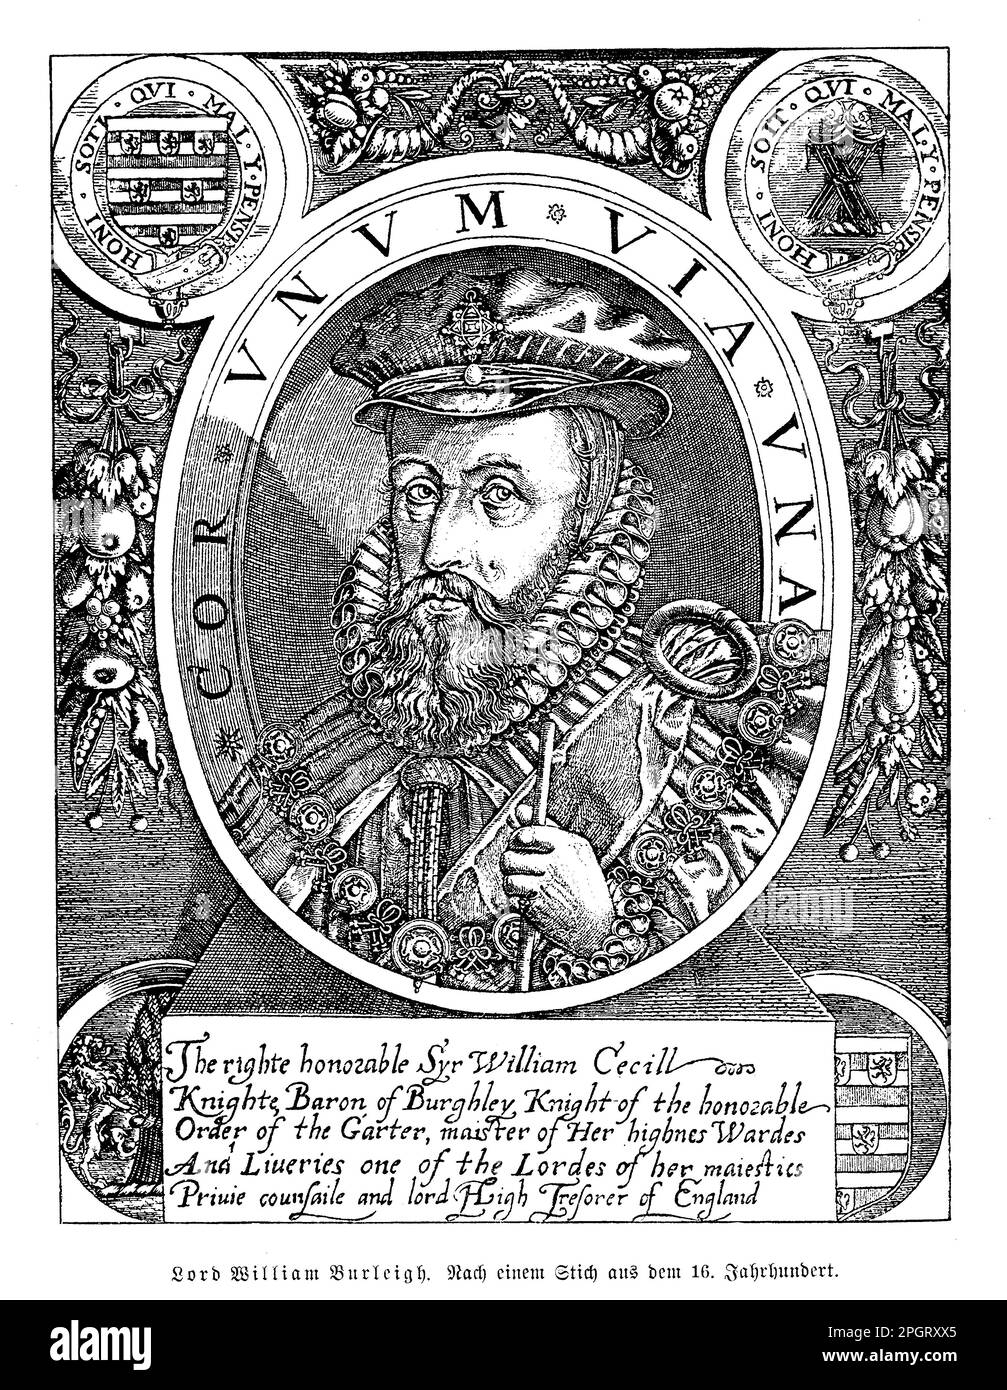 William Cecil, également connu sous le nom de Lord Burghley, était un éminent homme d'État anglais qui a vécu de 1520 à 1598. Il a été secrétaire d'État et haut trésorier du Seigneur sous la reine Elizabeth I, et a joué un rôle clé dans la politique élisabéthaine. Cecil était un administrateur qualifié et diplomate, et a été impliqué dans de nombreuses décisions importantes pendant son temps en fonction, y compris la création de l'Église d'Angleterre et la défaite de l'Armada espagnole. Il était également un mécène des arts et a soutenu le travail d'écrivains comme Edmund Spenser. Banque D'Images